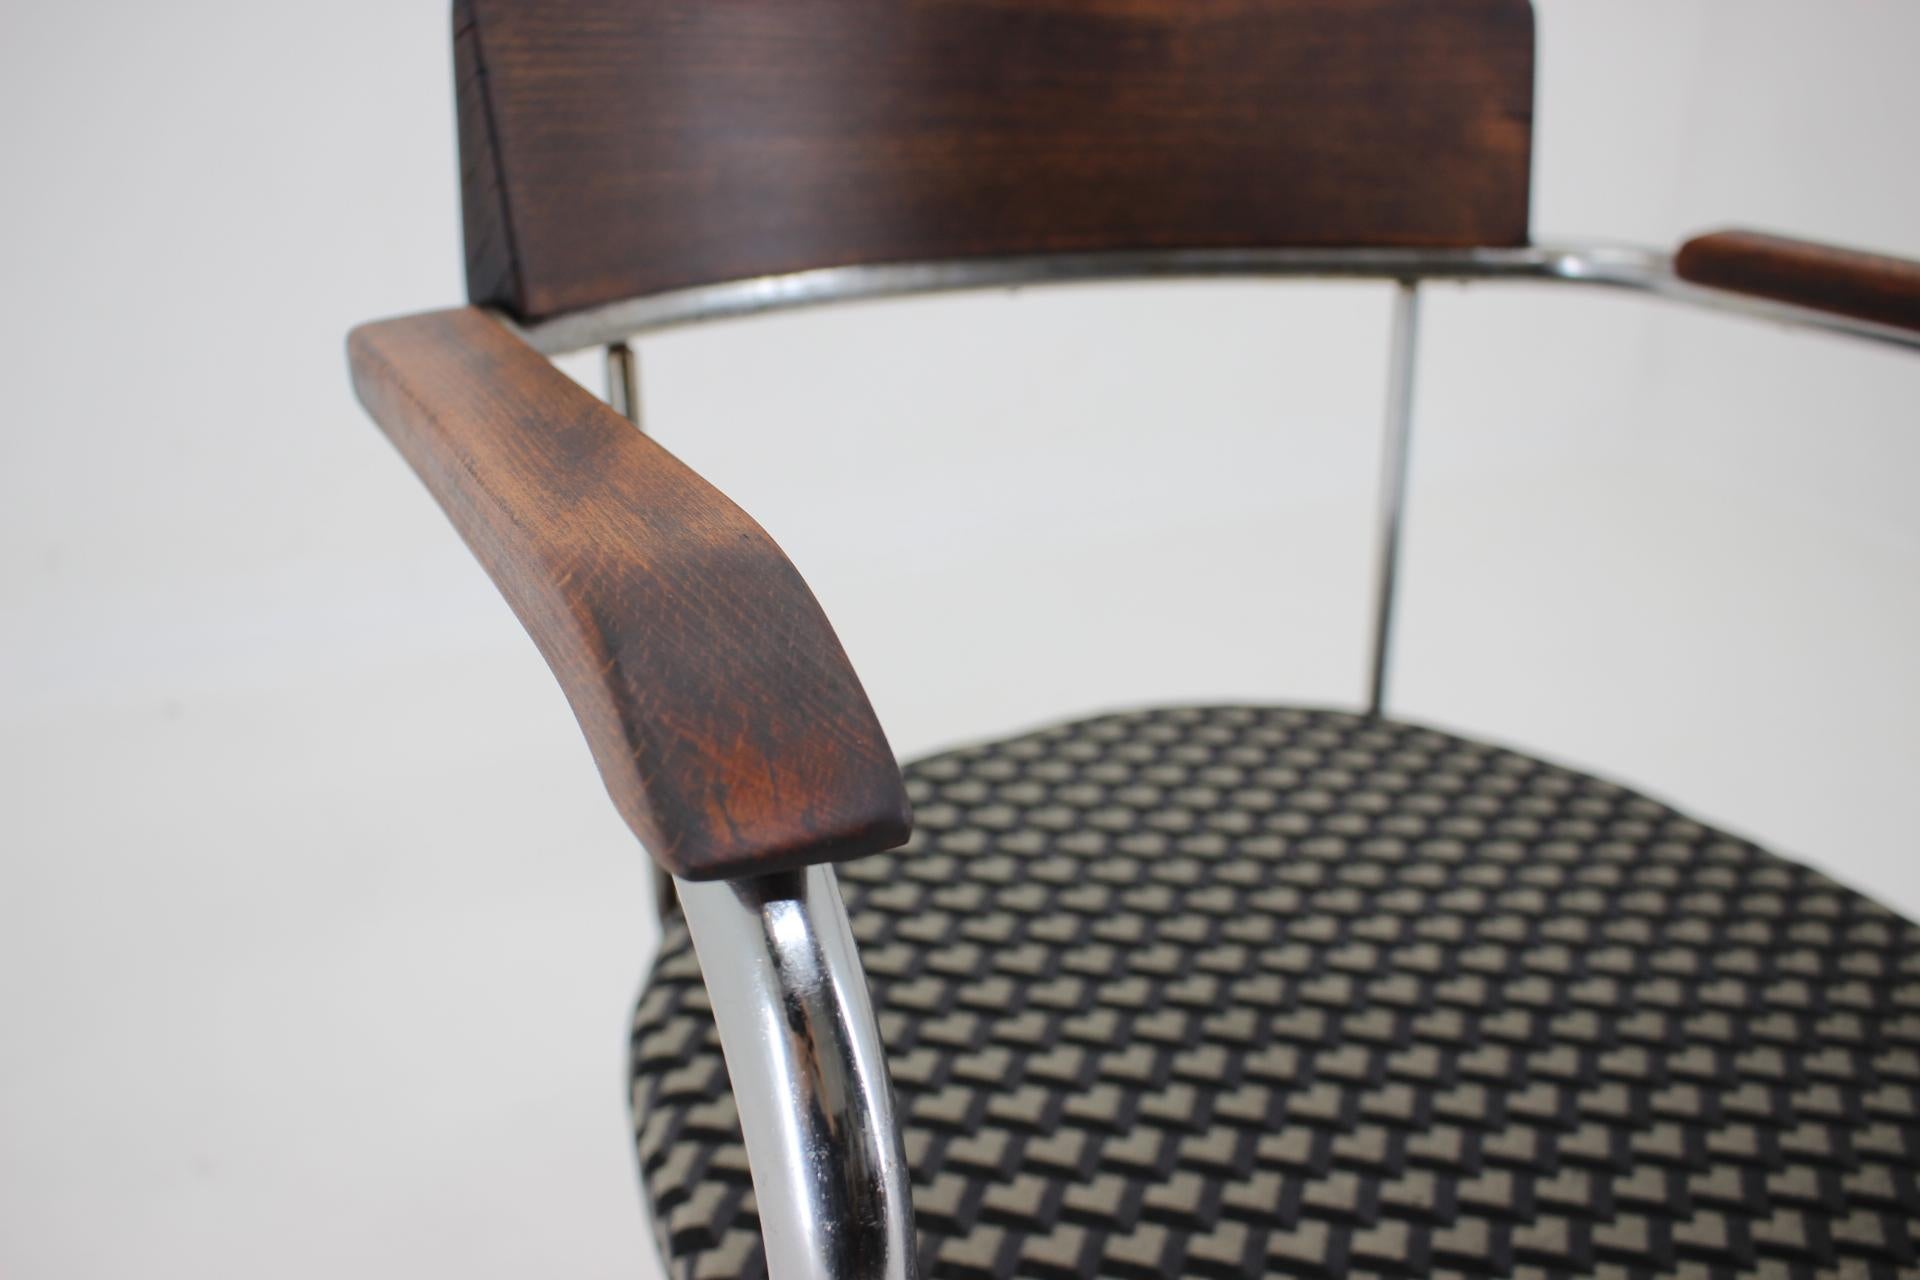 Bauhaus Tubular Steel Chrome Desk Chair 1930s / Czechoslovakia For Sale 1